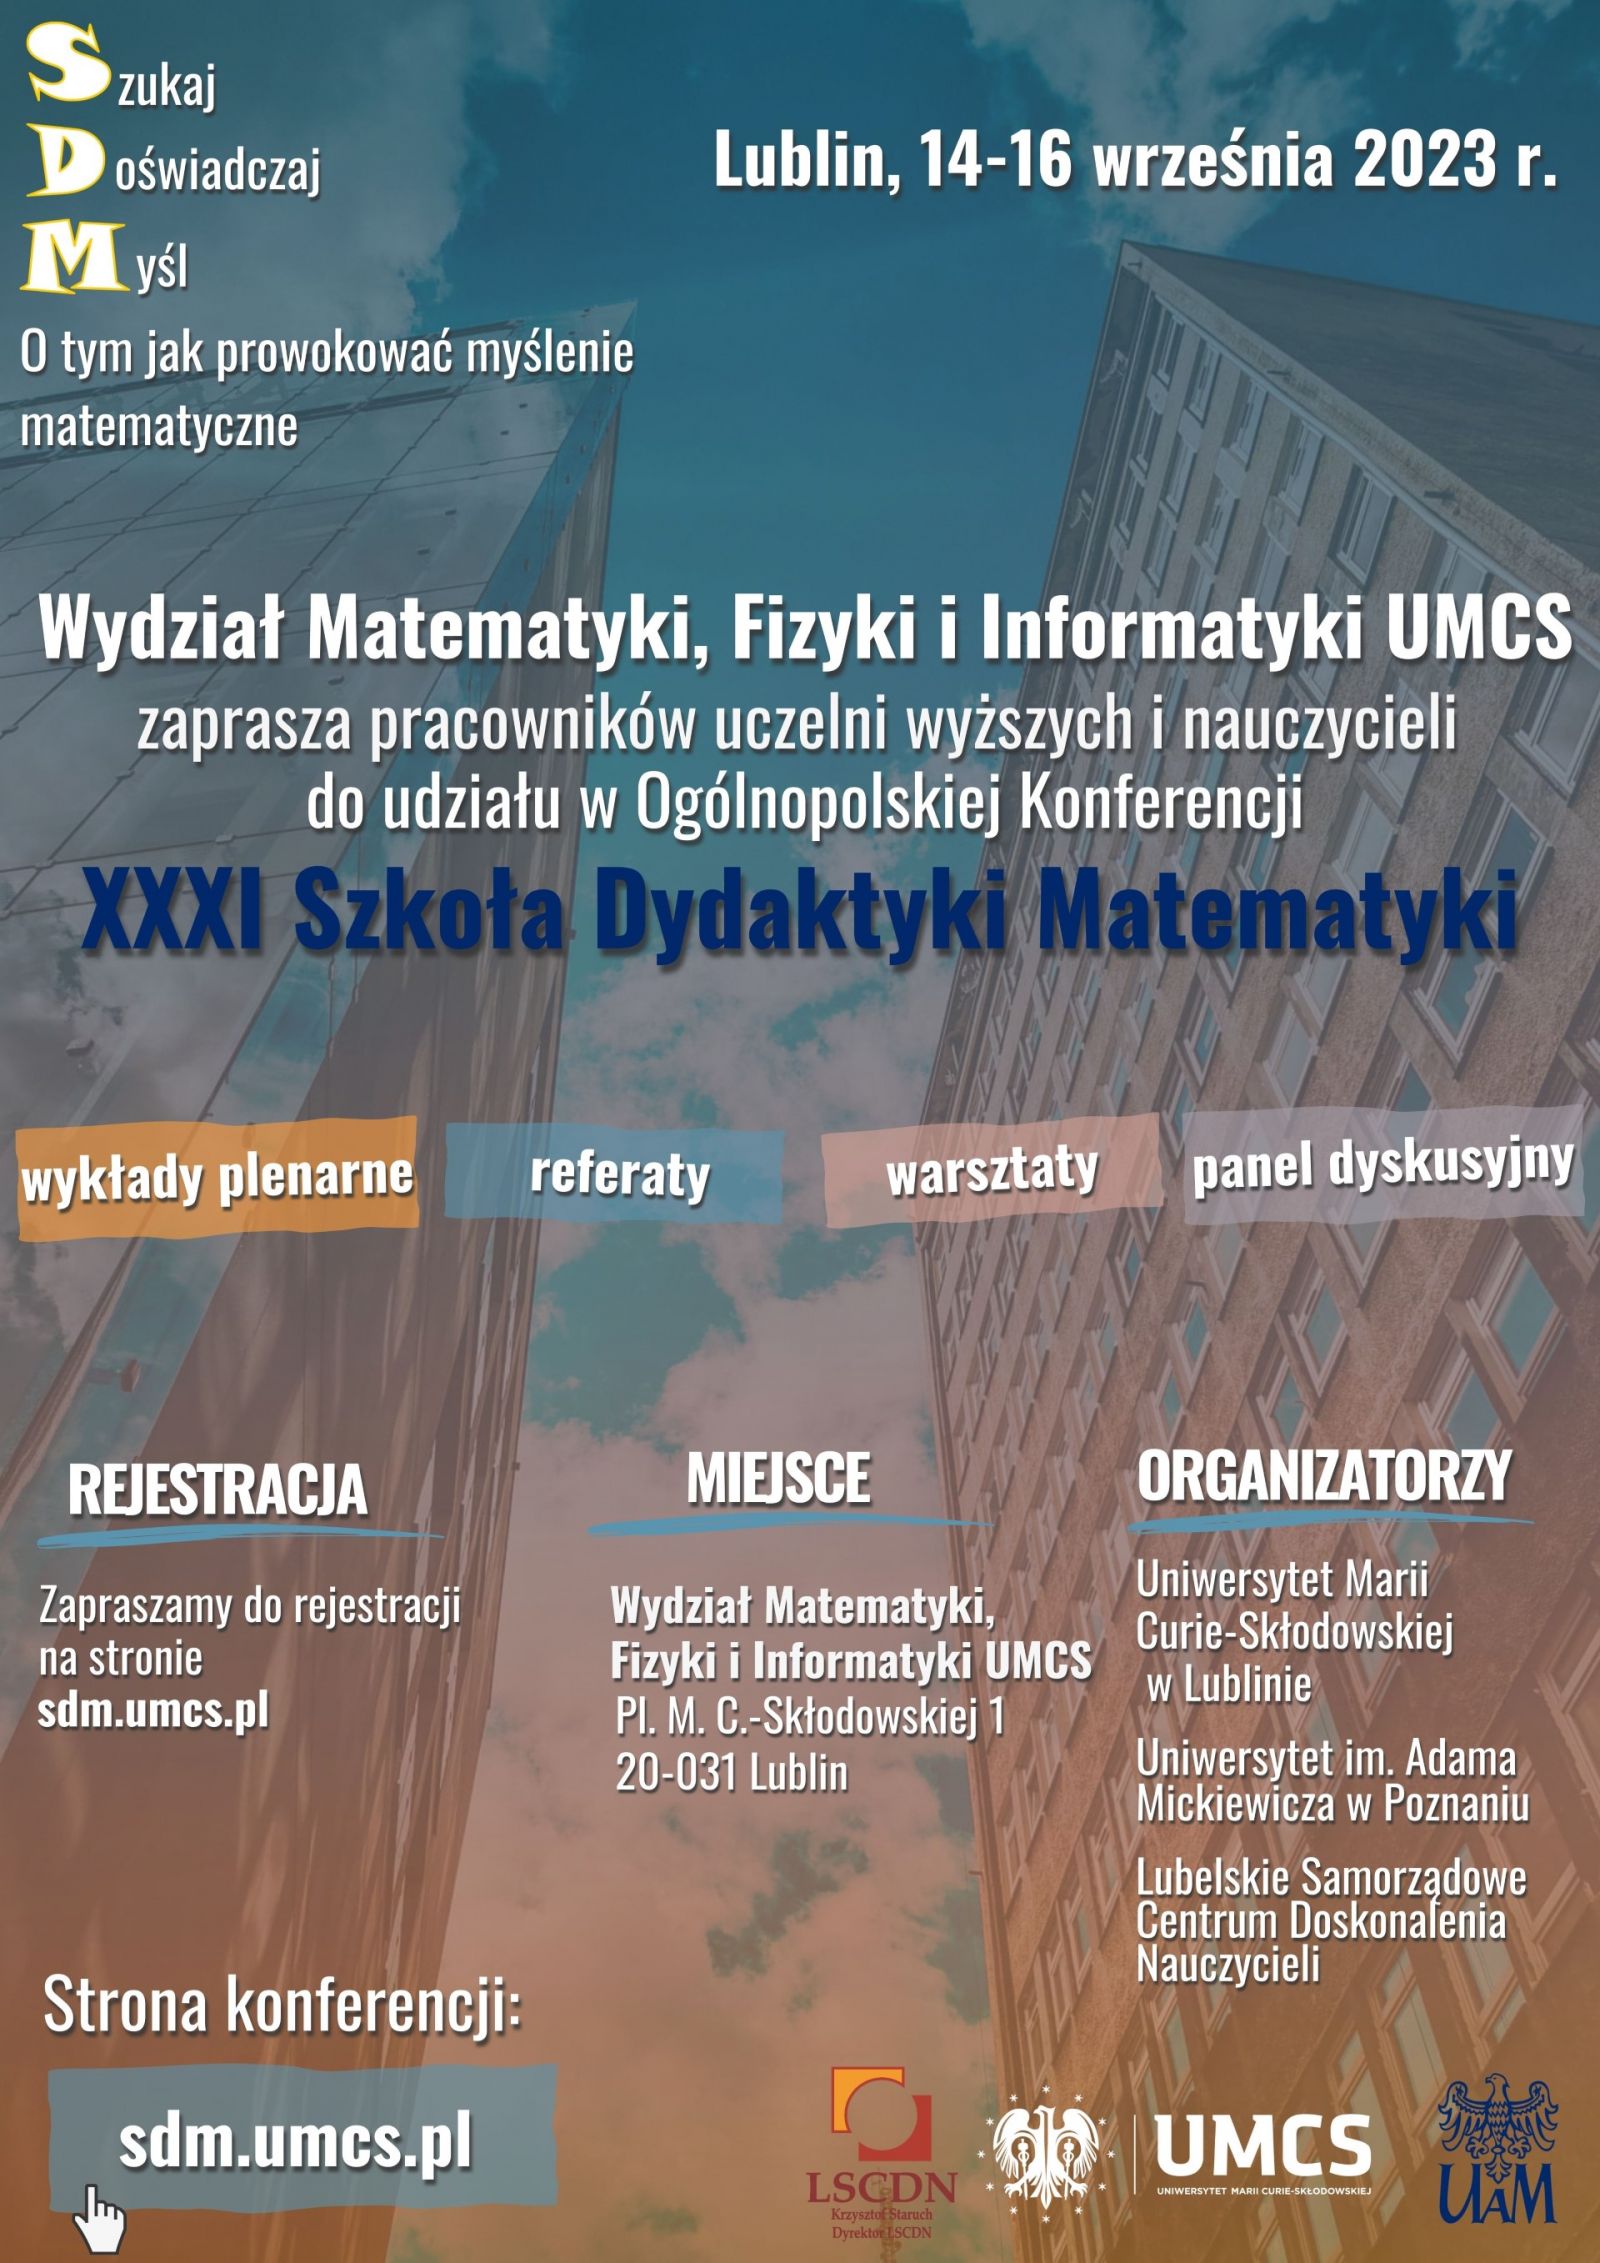 Plakat konferencji XXXI Szkoła Dydaktyki Matematyki 